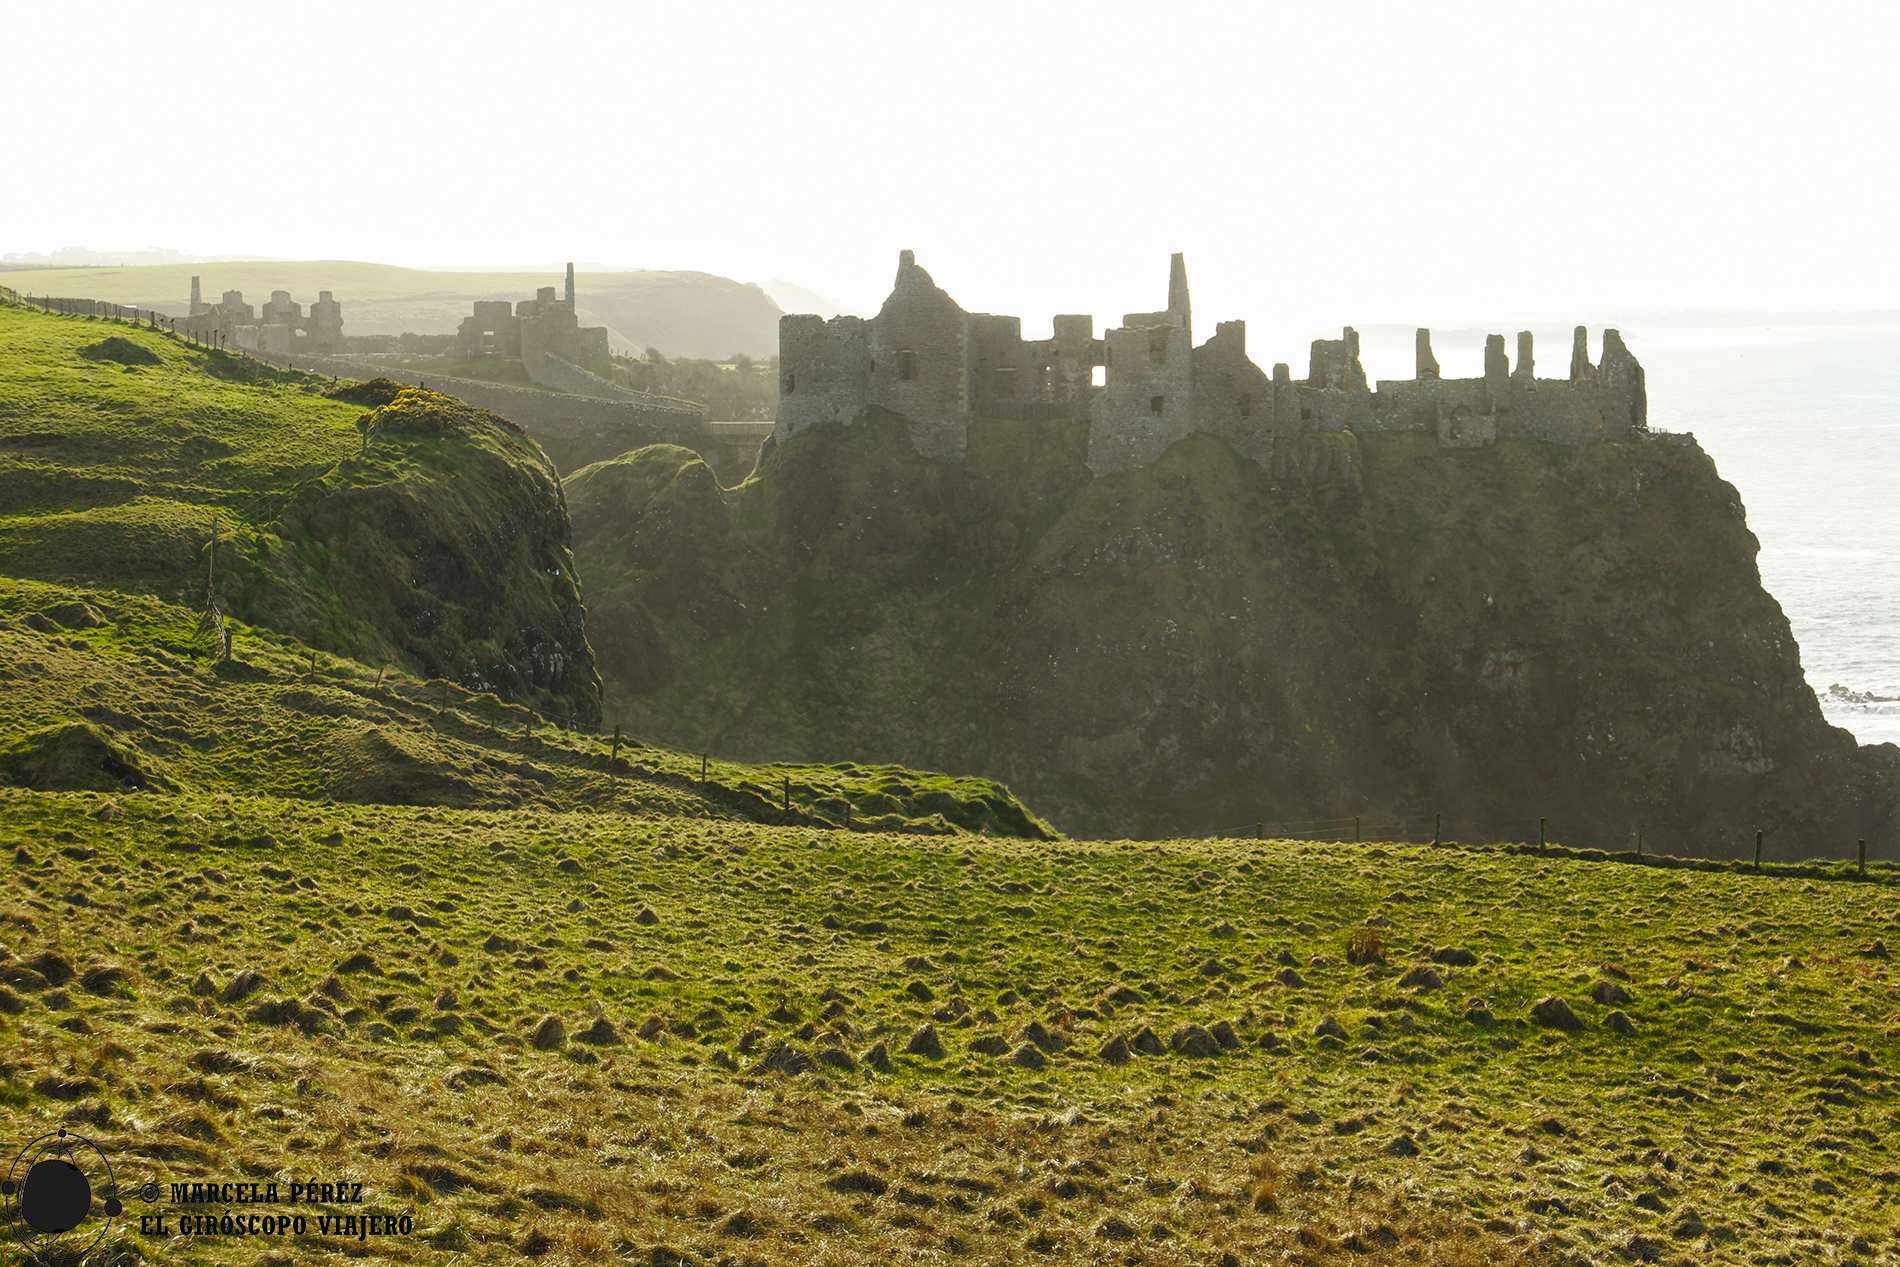 La figura del Dunluce Castle se dibuja en el horizonte, casi mimetizada entre la luz y la montaña...